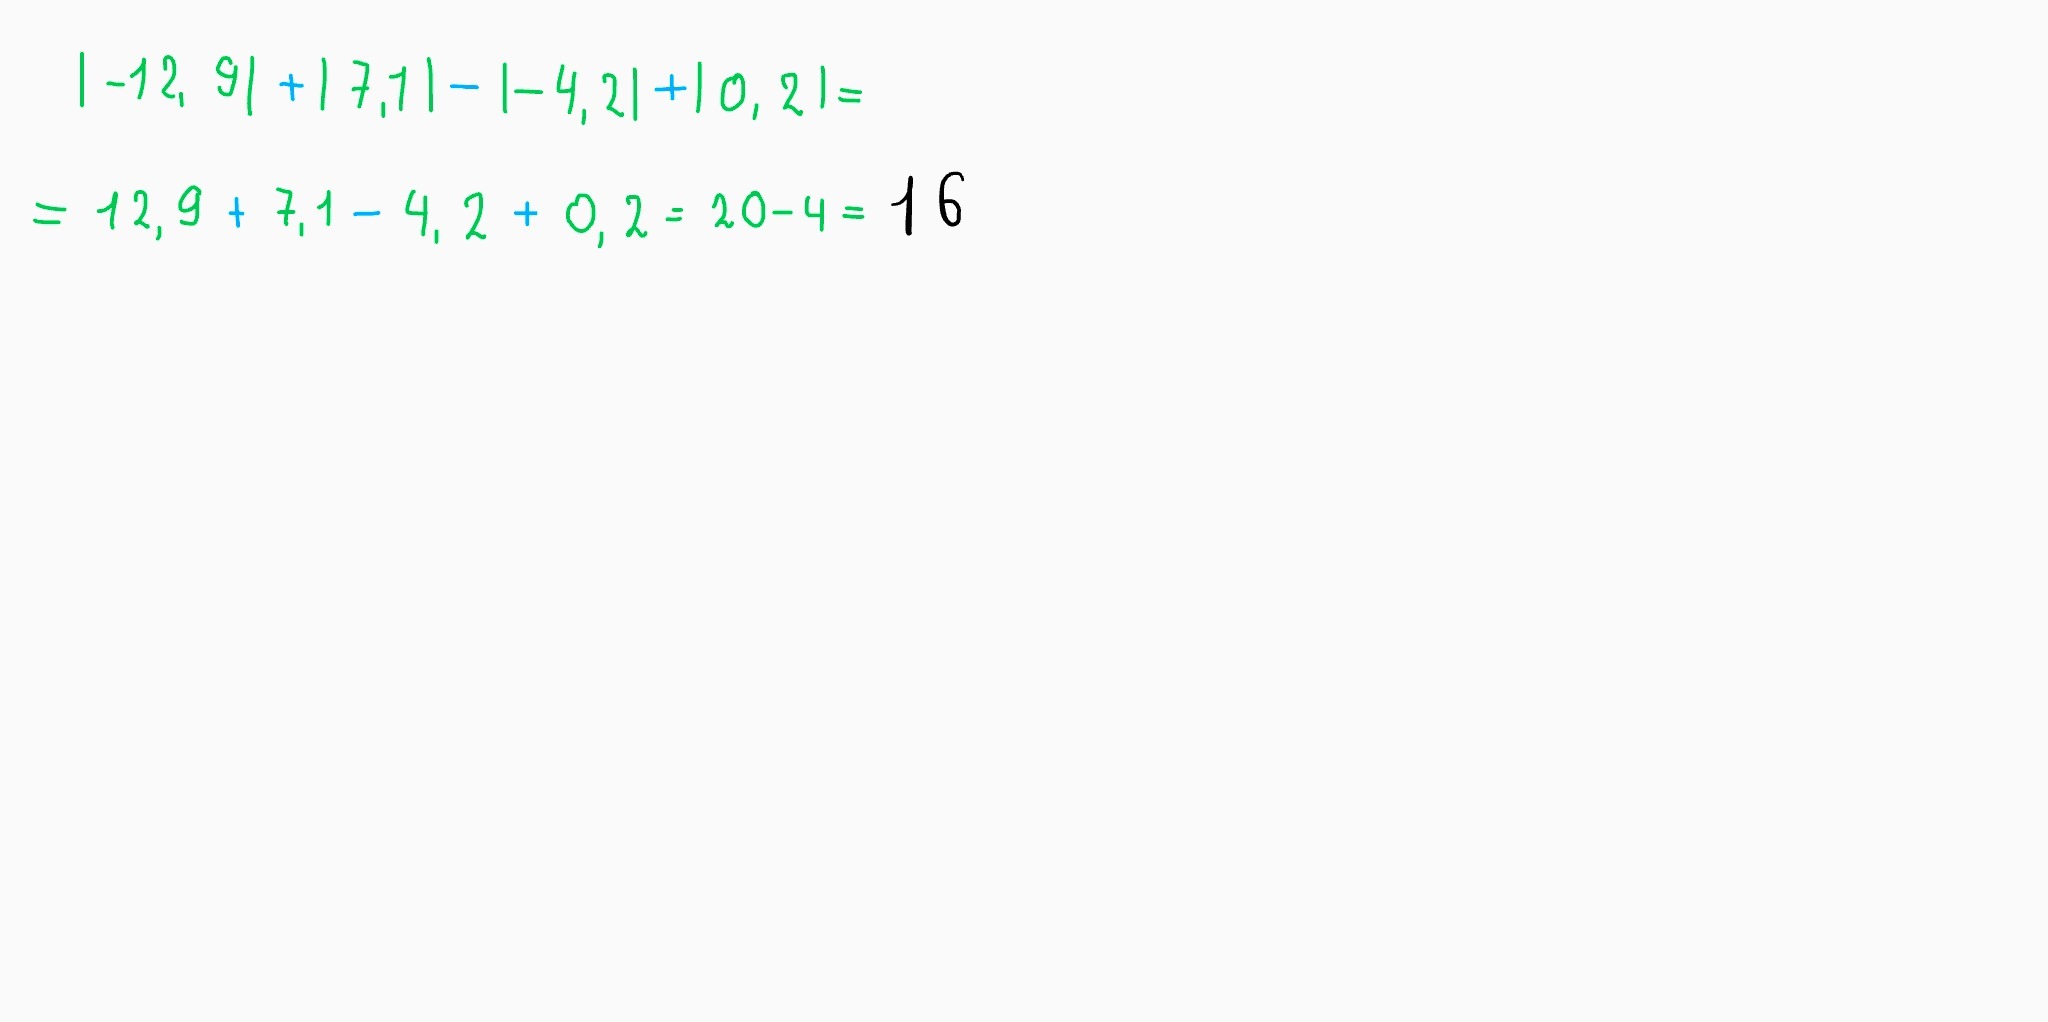 Вычисли |12,9| + |7,1|. Вычислите 12 1/4- 7 1/3+1 1/6. Вычисли /-12.9/+/7.1/-/-4.2/+/0.2/. Вычислить12 1/3•11/2•33/4•41/5.